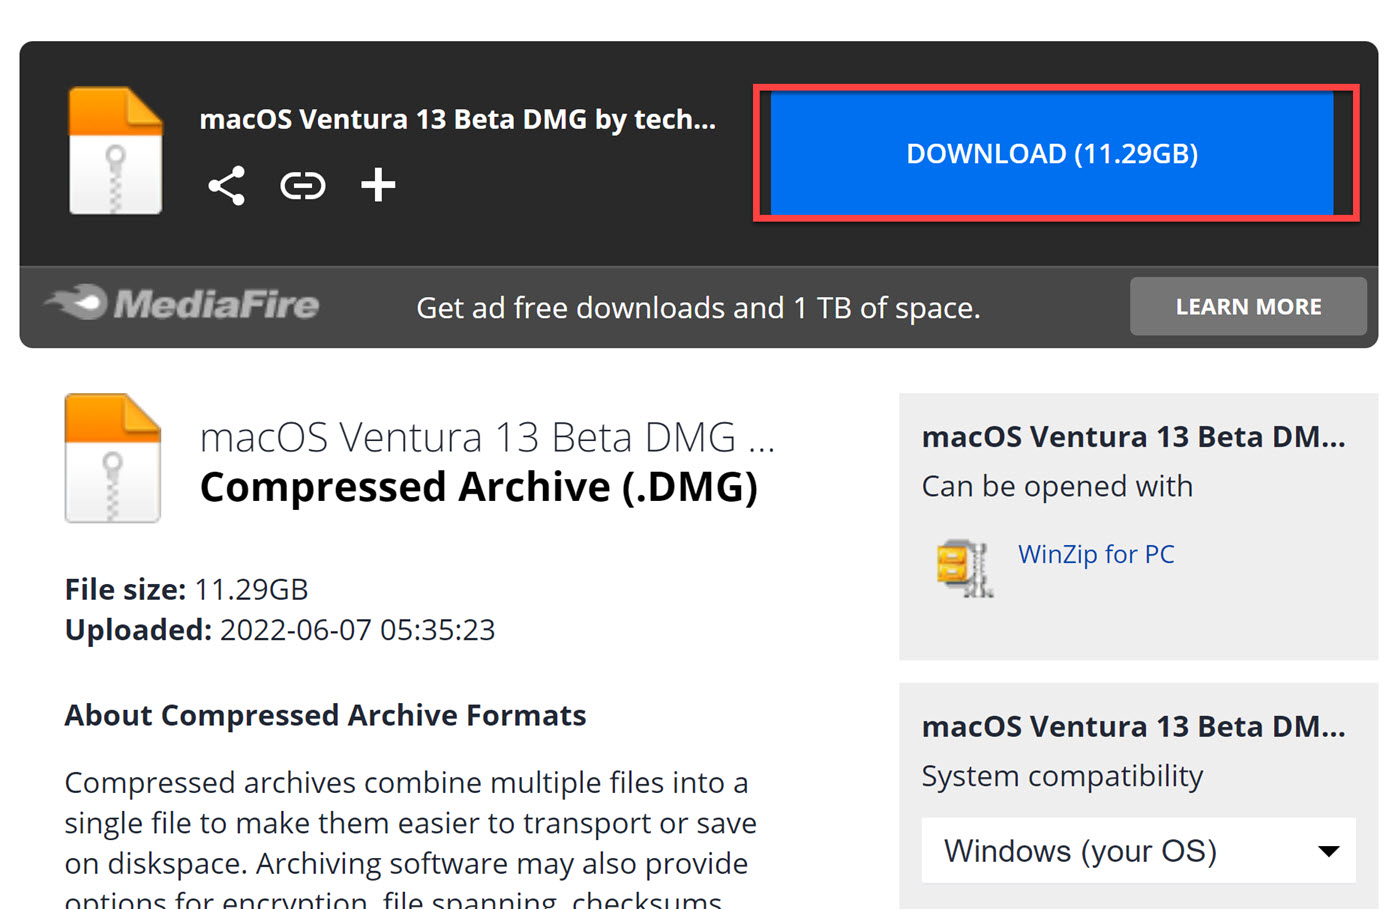 macos ventura full installer download dmg